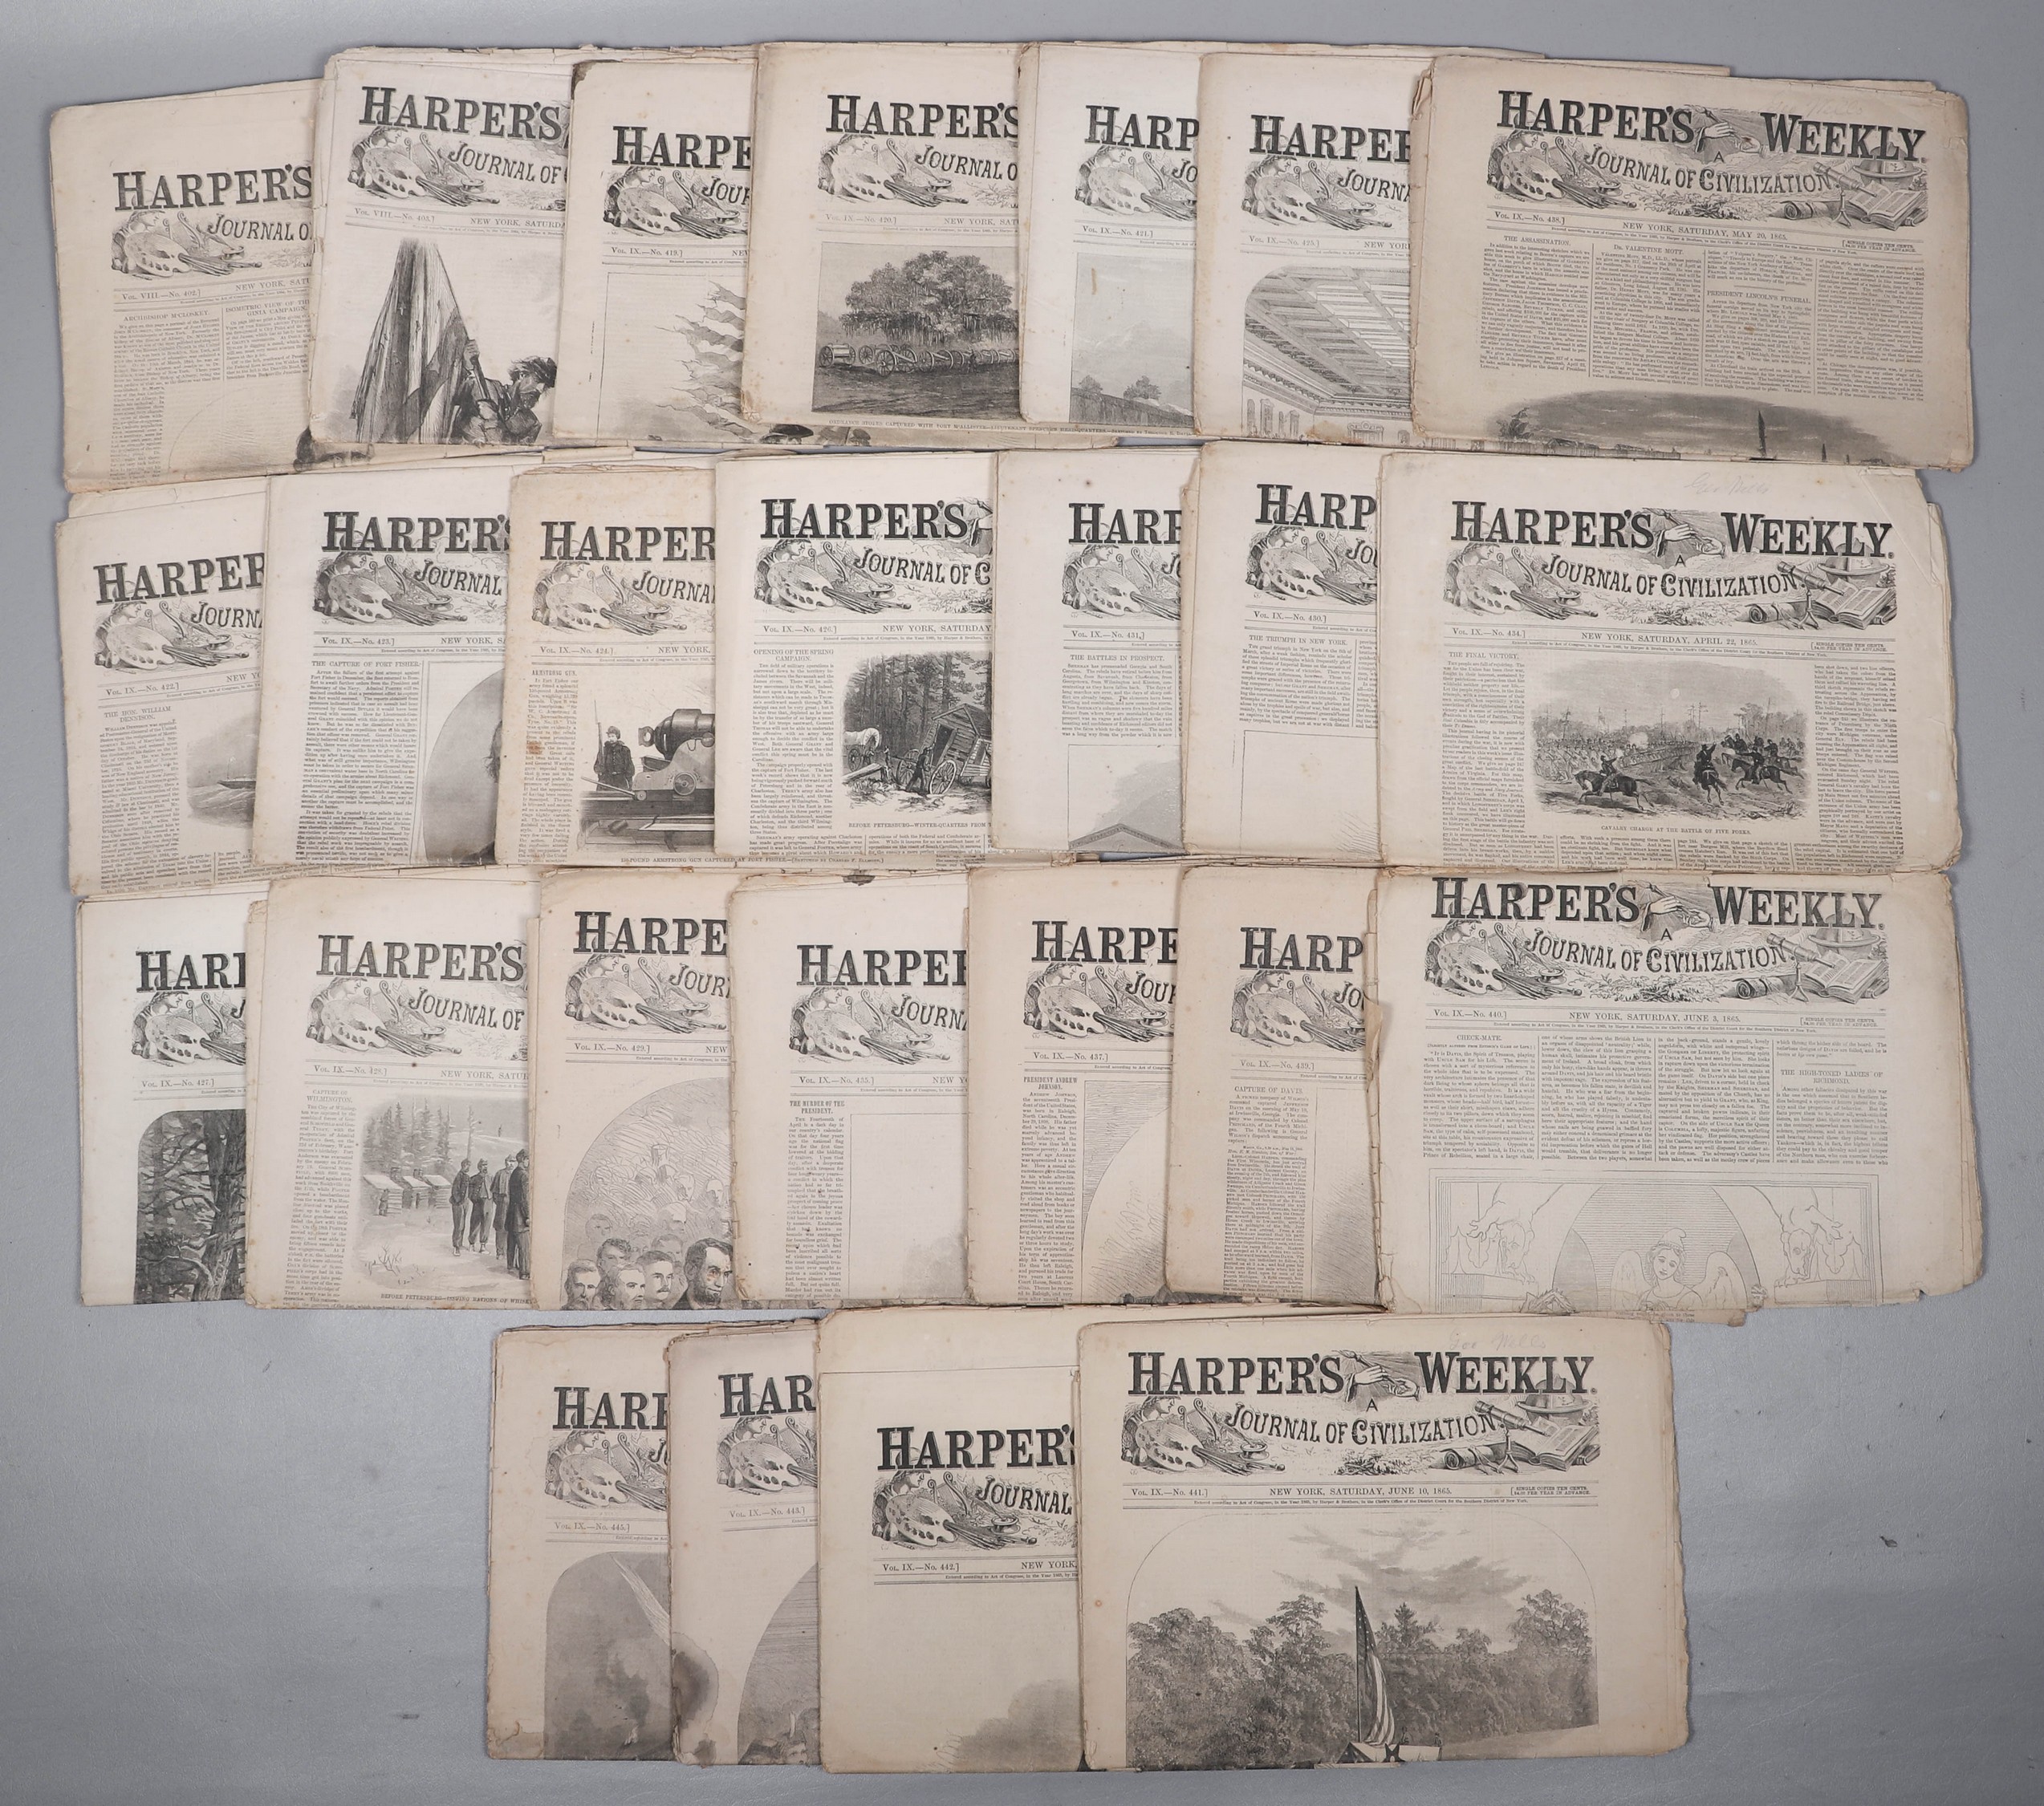 Twenty-five issues of Harper's